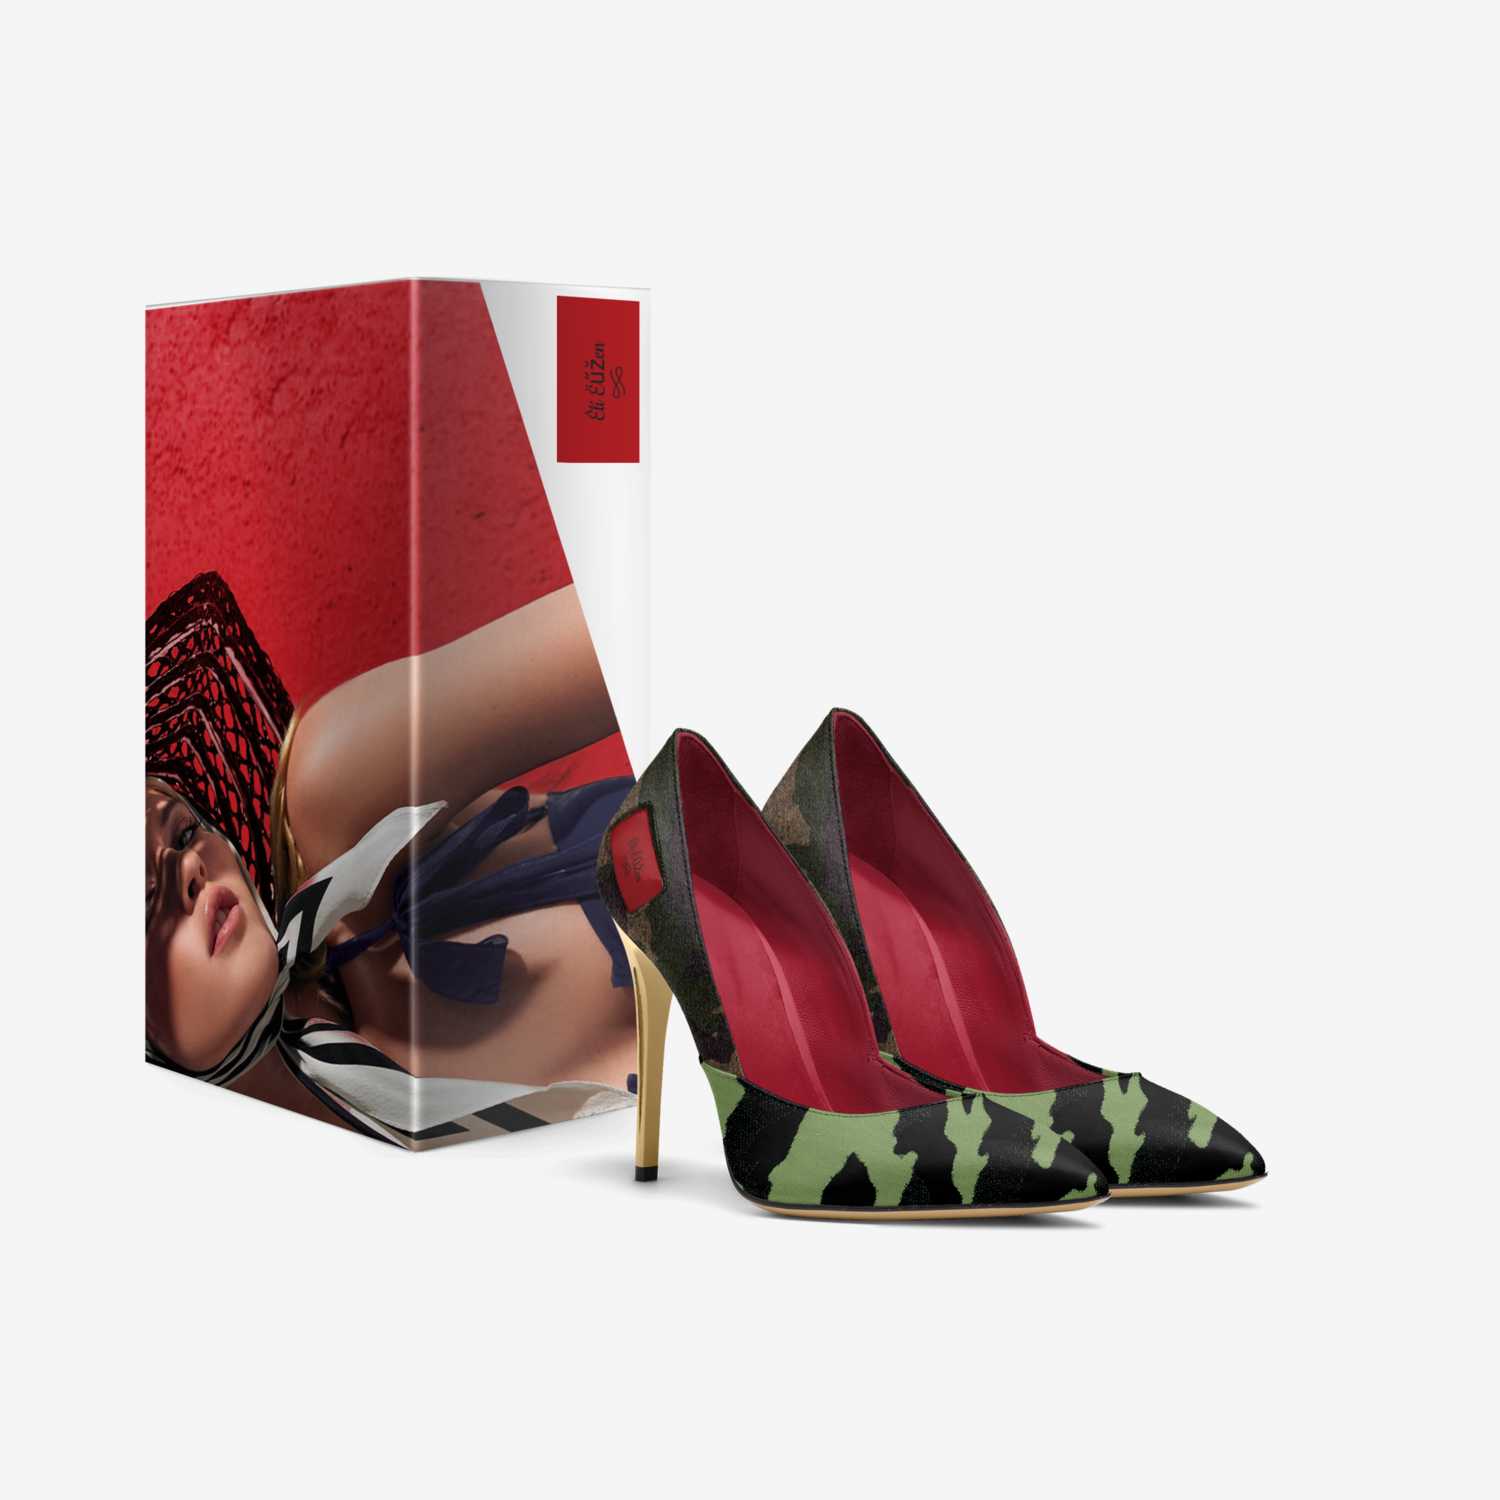 Êlí Ëűžen custom made in Italy shoes by Ëűženphõric Êlíxïř | Box view